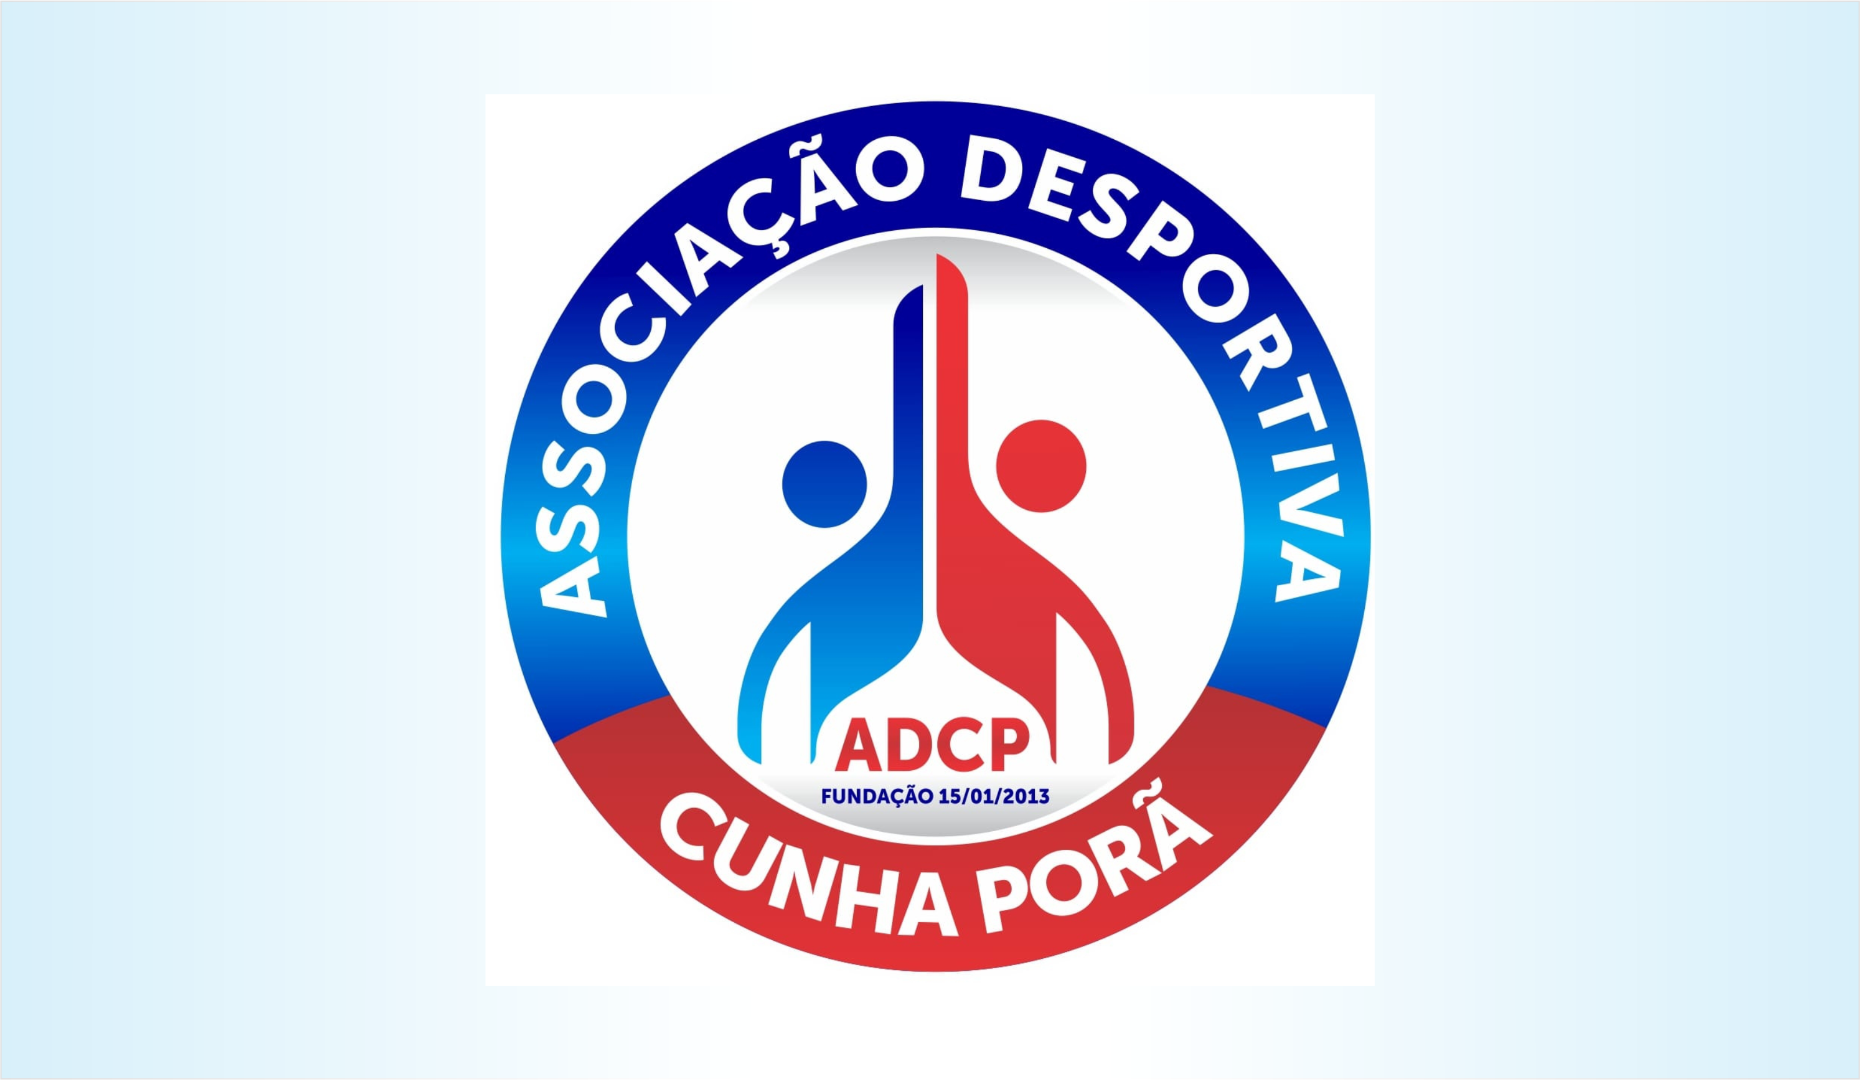 Atividades das escolinhas de futsal e vôlei retomam na próxima semana em Cunha Porã